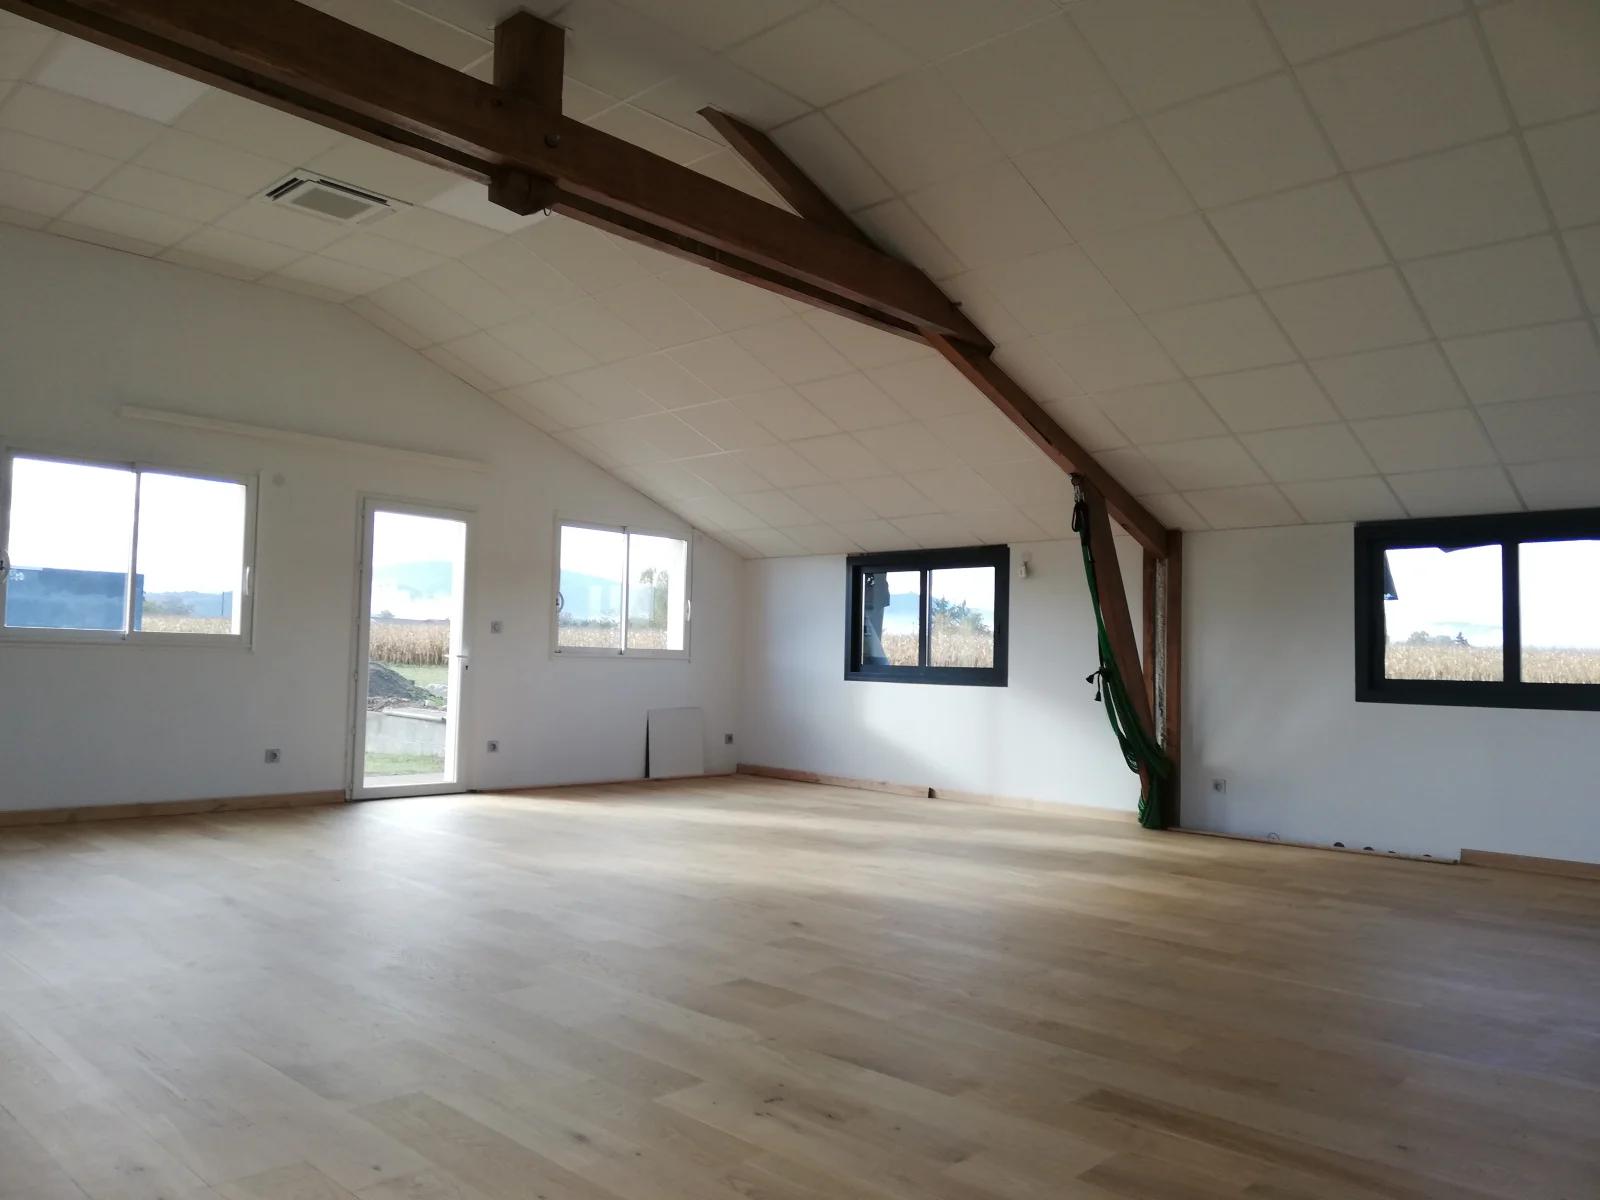 Meeting room in Salle de sport / Pilates studio / Yoga - 1